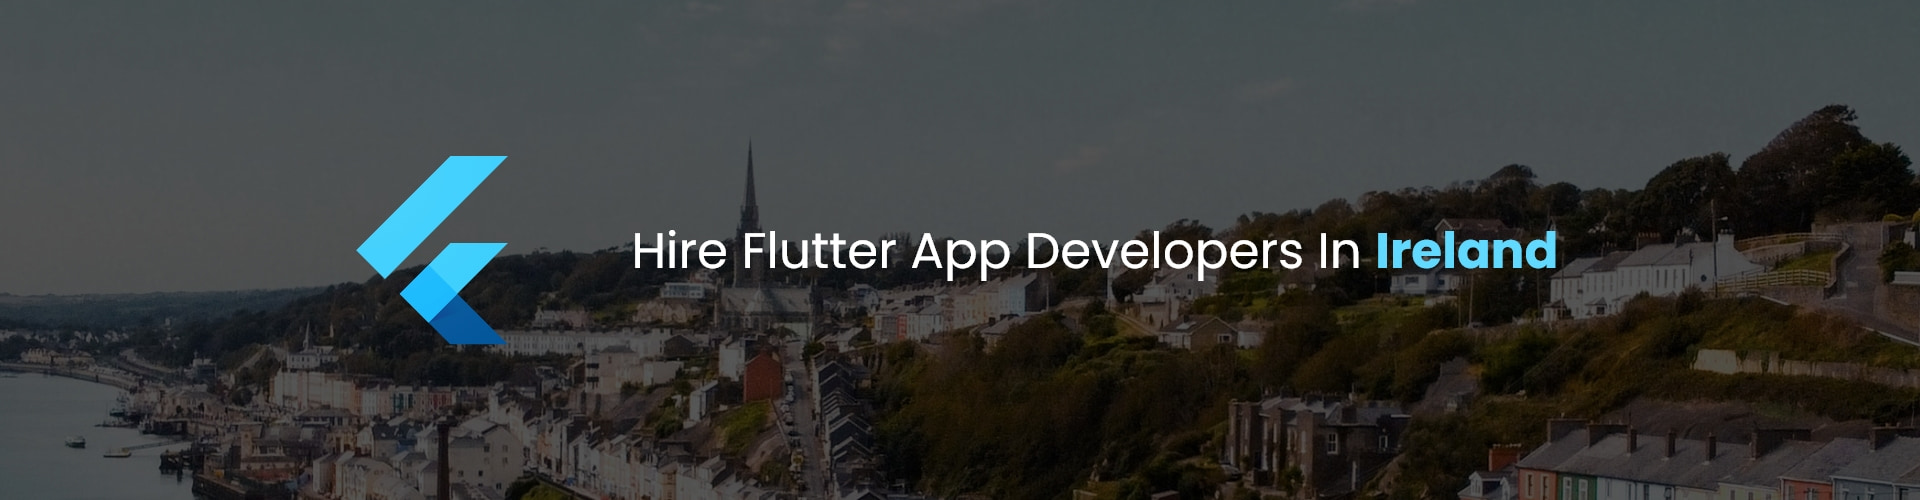 hire flutter app developers in ireland